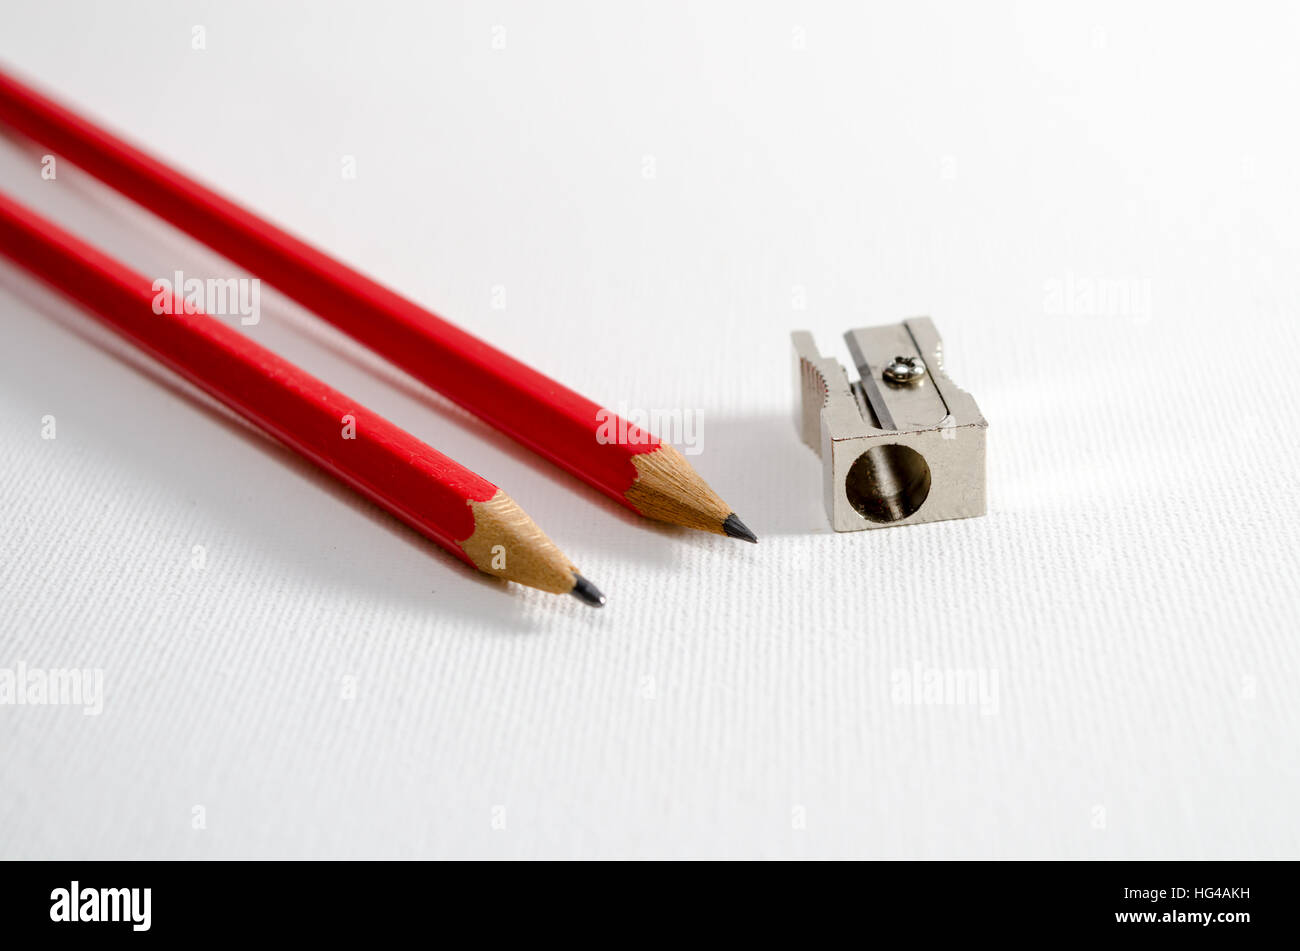 Une photographie de quelques crayons et un taille-crayon Banque D'Images